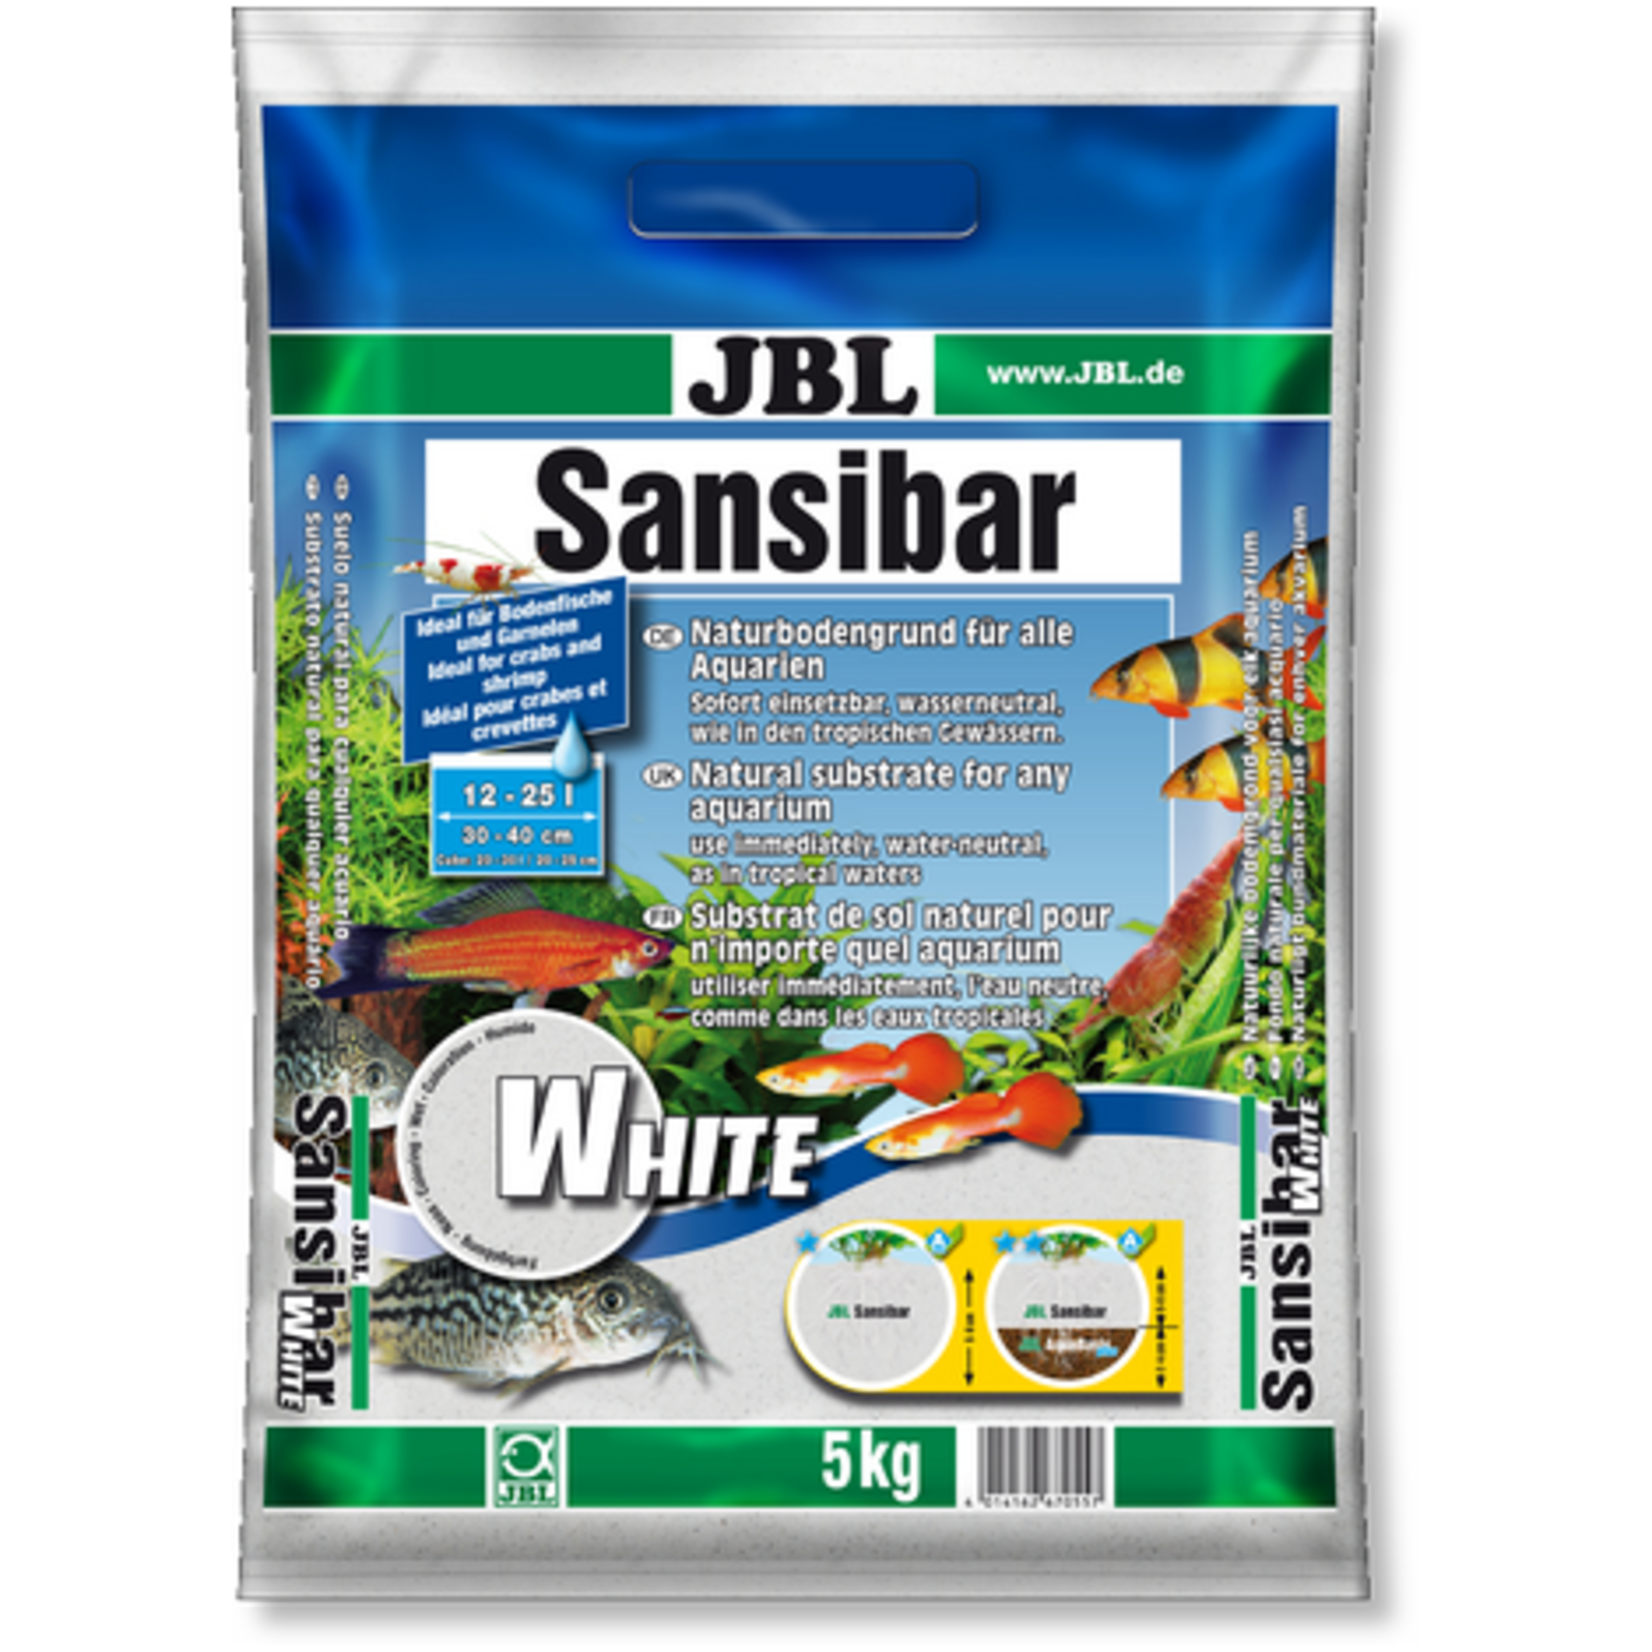 JBL Sansibar white 5kg